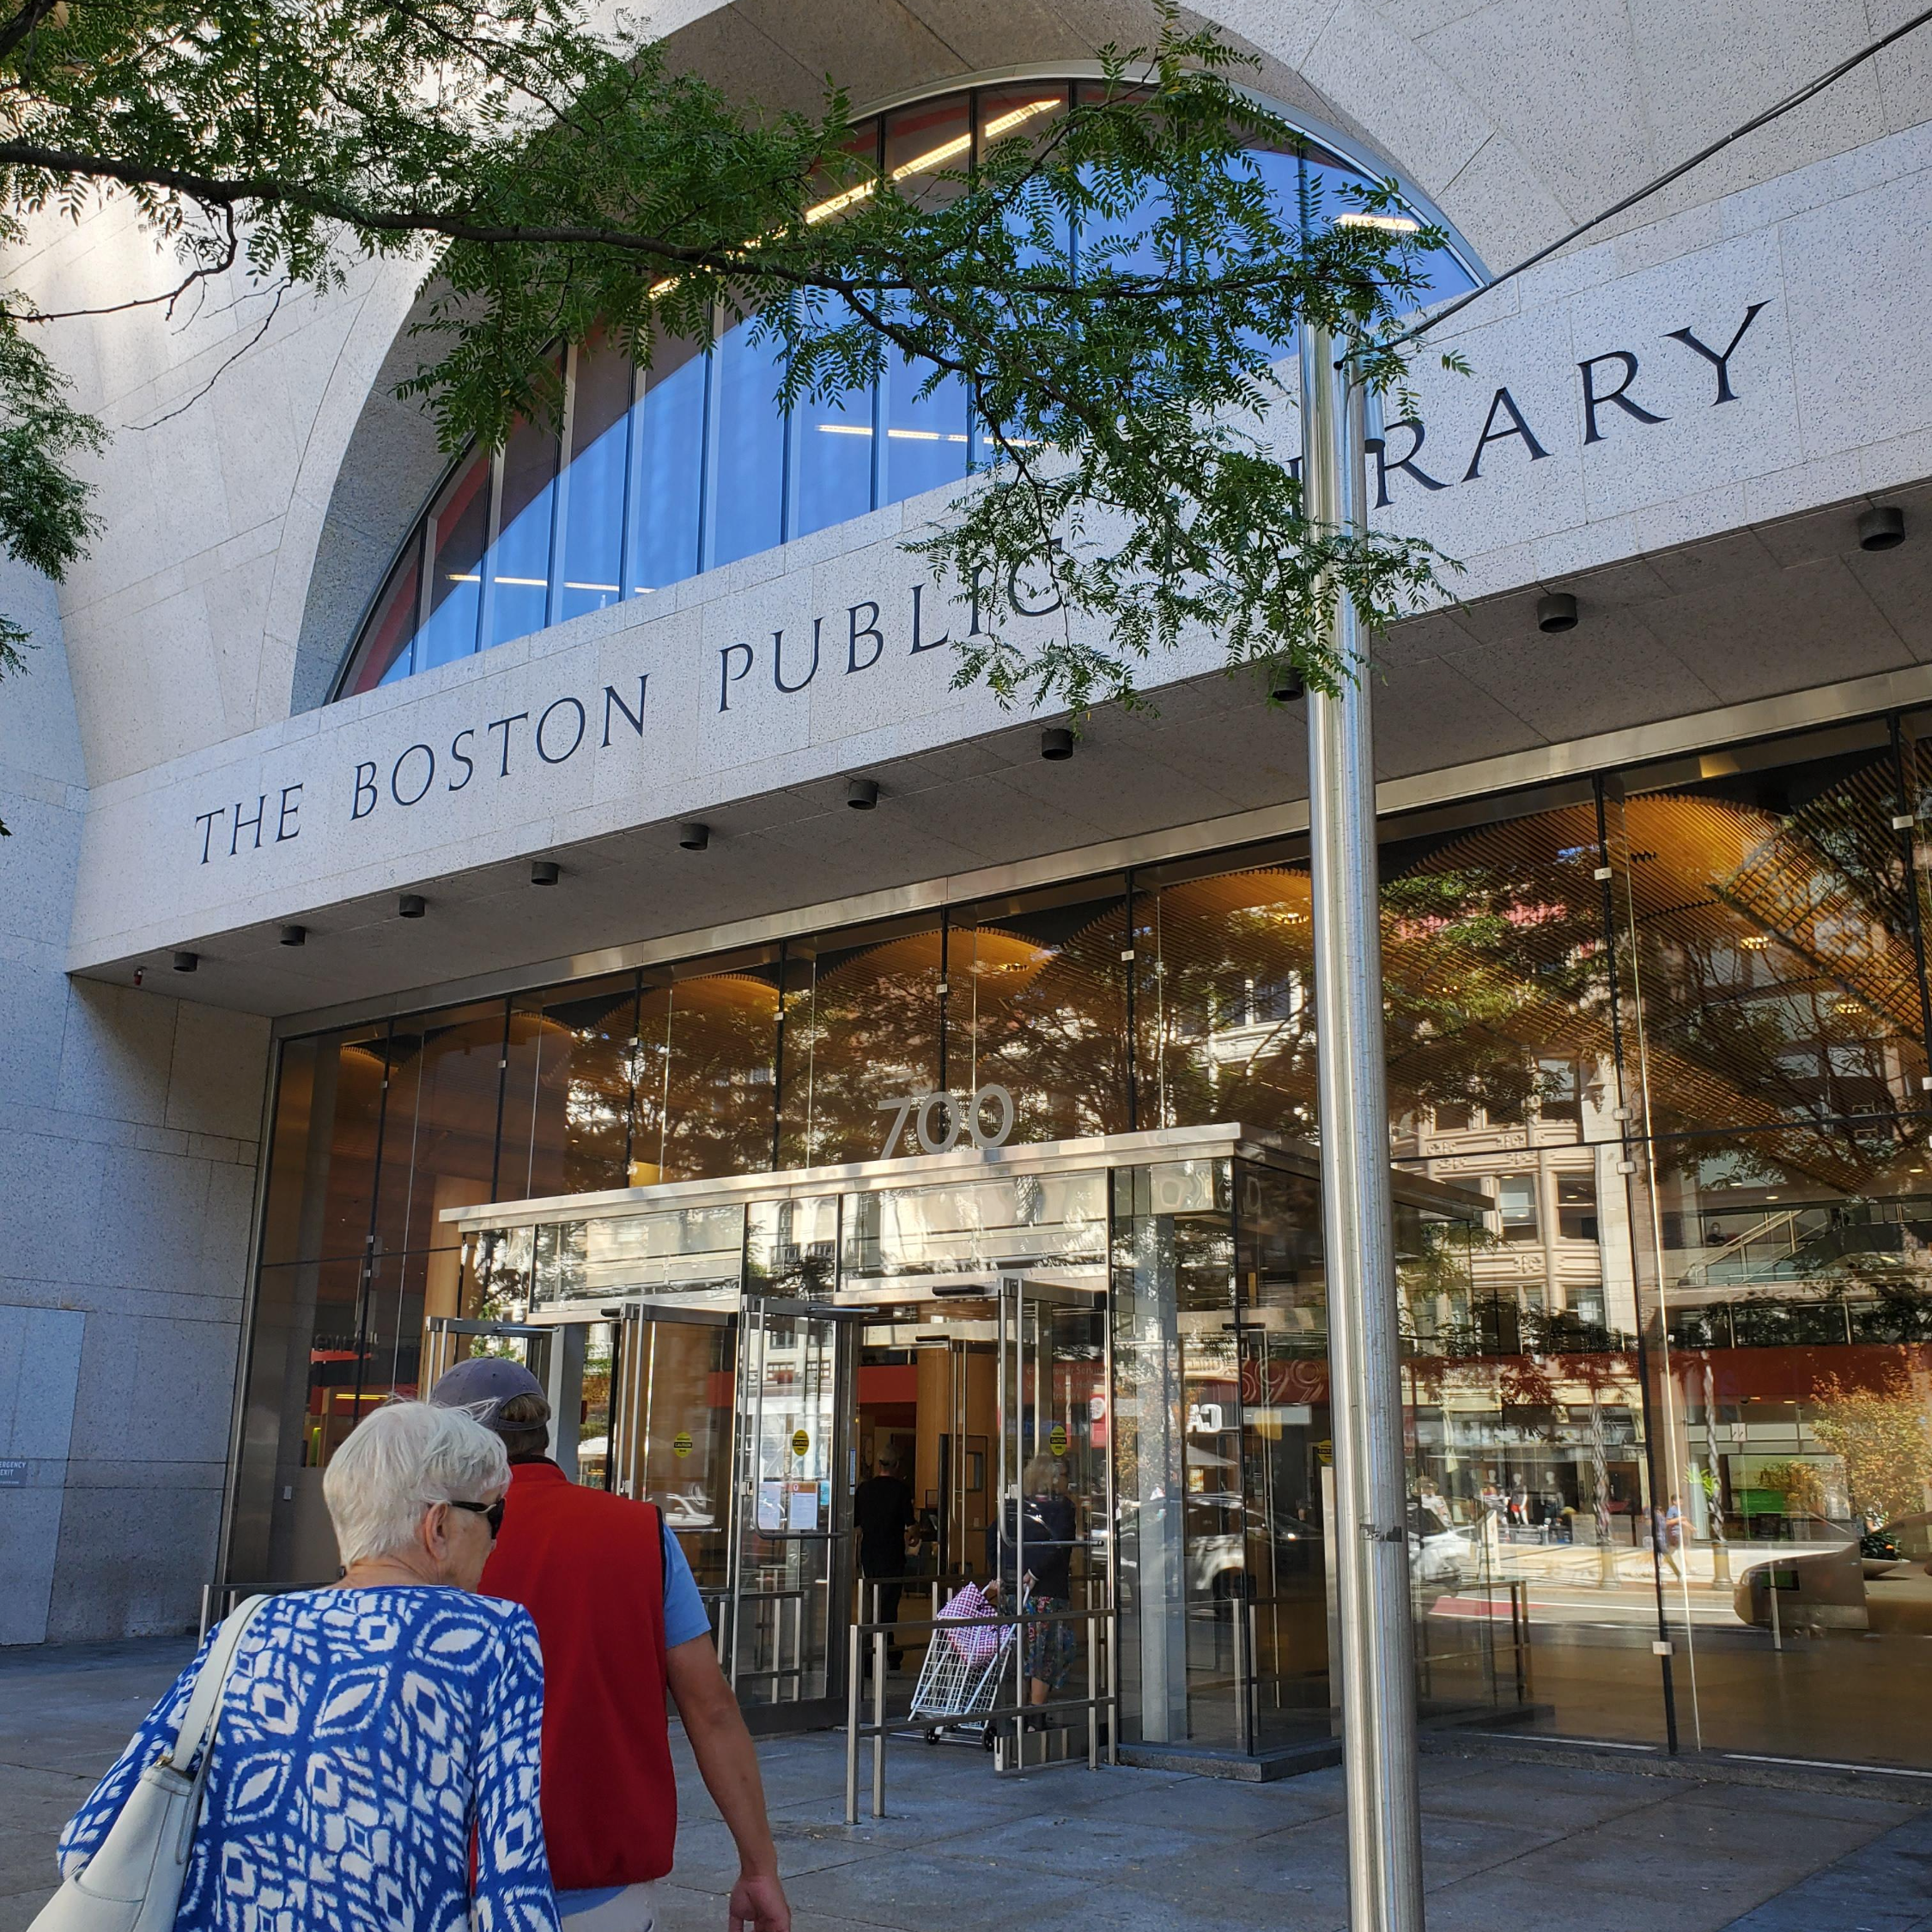 보스턴 퍼블릭 도서관입니다. 이곳은 신관 입구입니다.